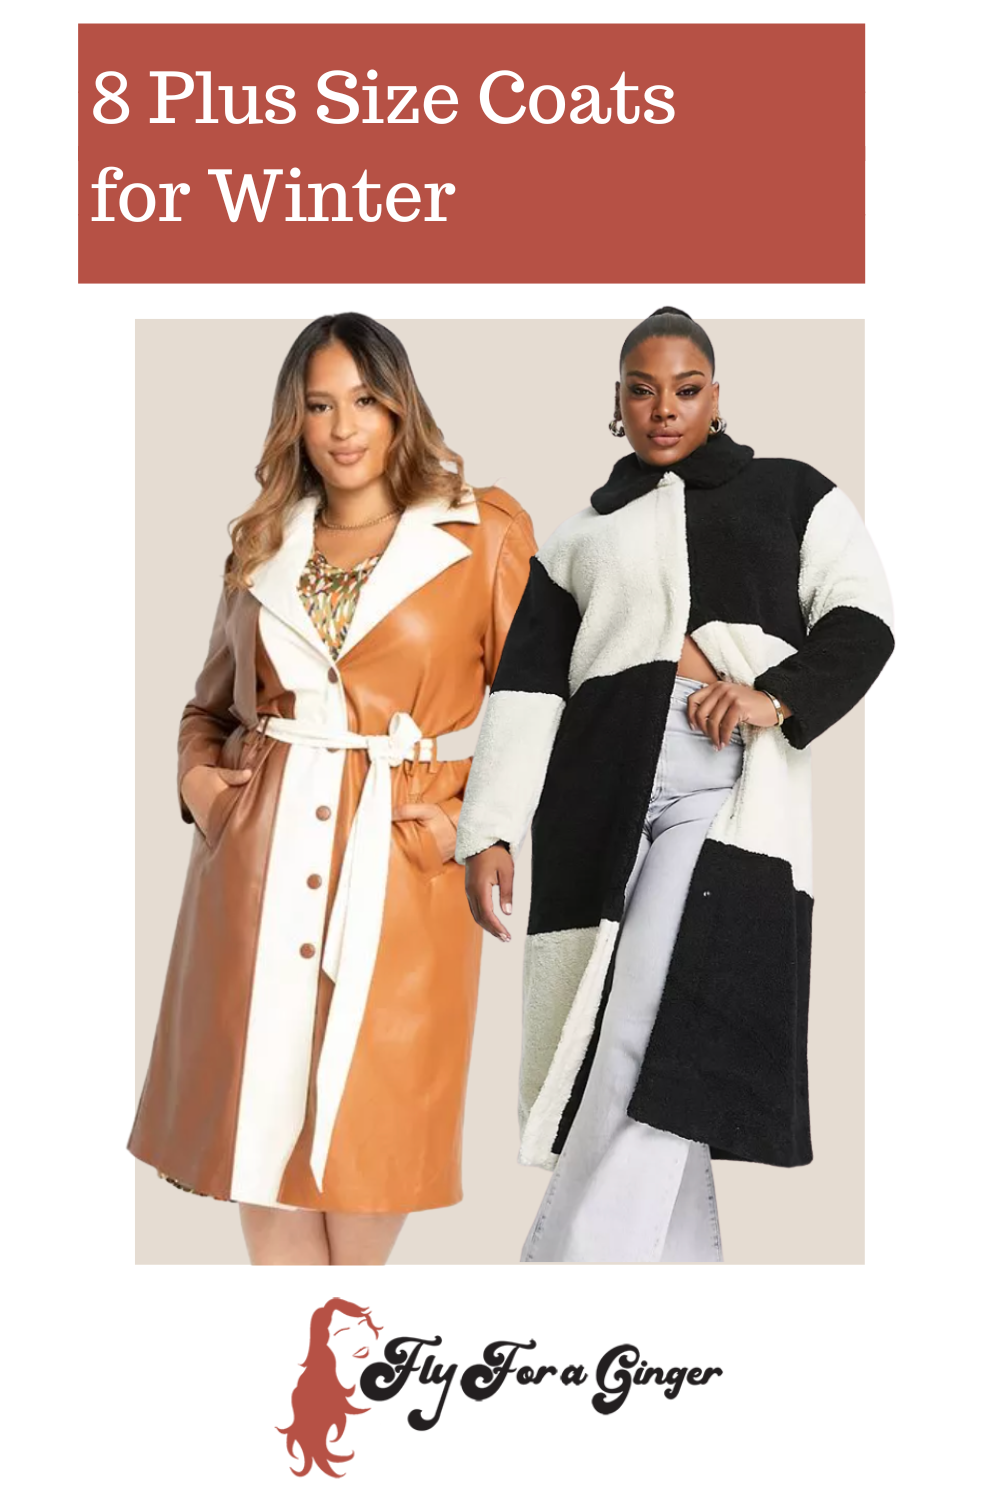 8 Plus Size Coats for Winter // Plus Size Winter Coats